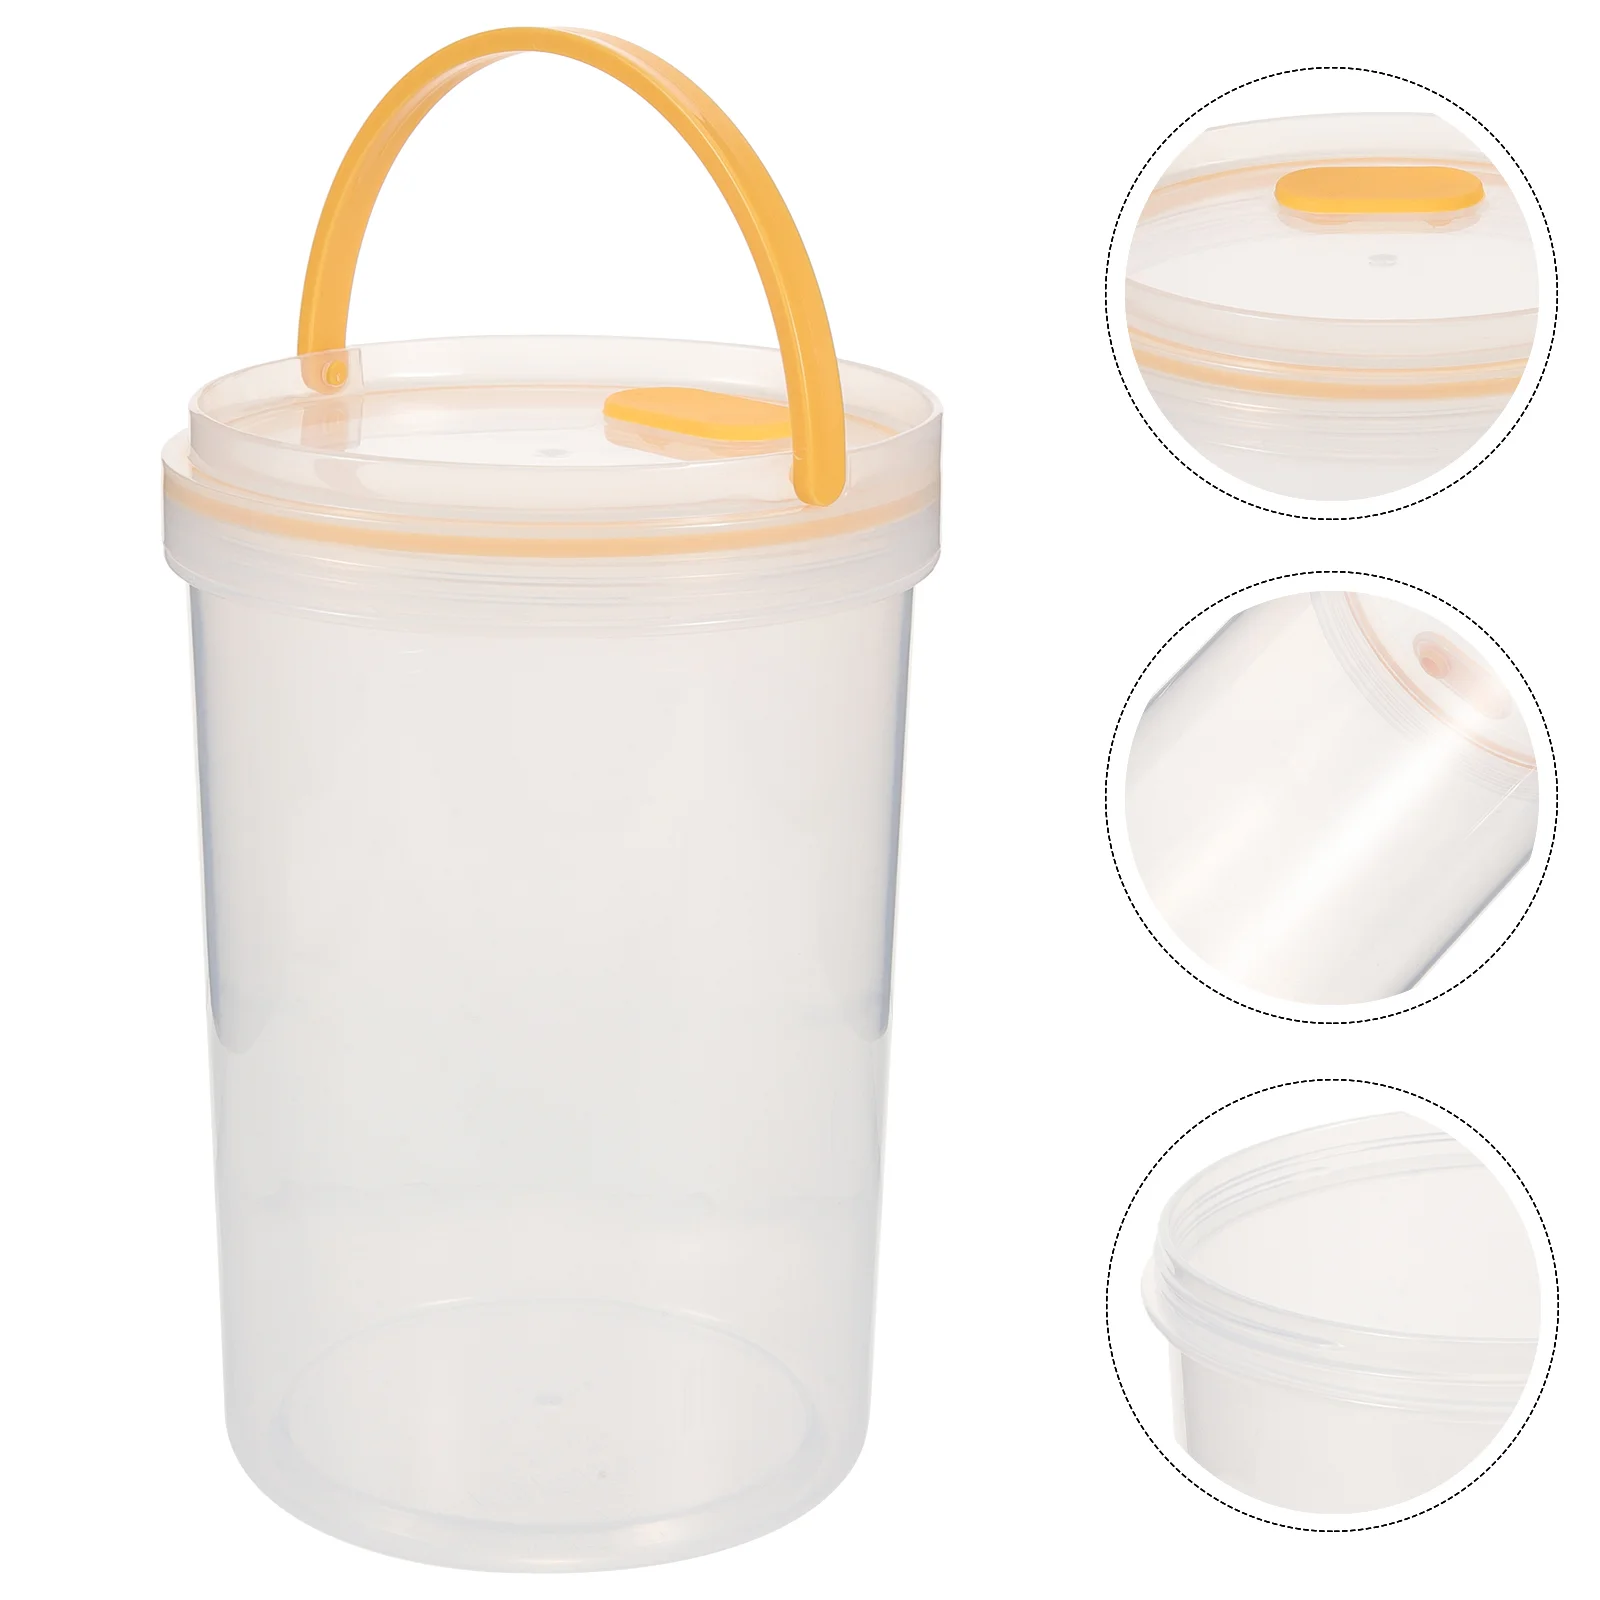 https://ae01.alicdn.com/kf/S5e2275b81d944bc5b78992d9255e1671p/Formula-Dispenser-Travel-Baby-Food-Container-Rice-Flour-Protein-Powder-Storage-Plastic-Milk.jpg